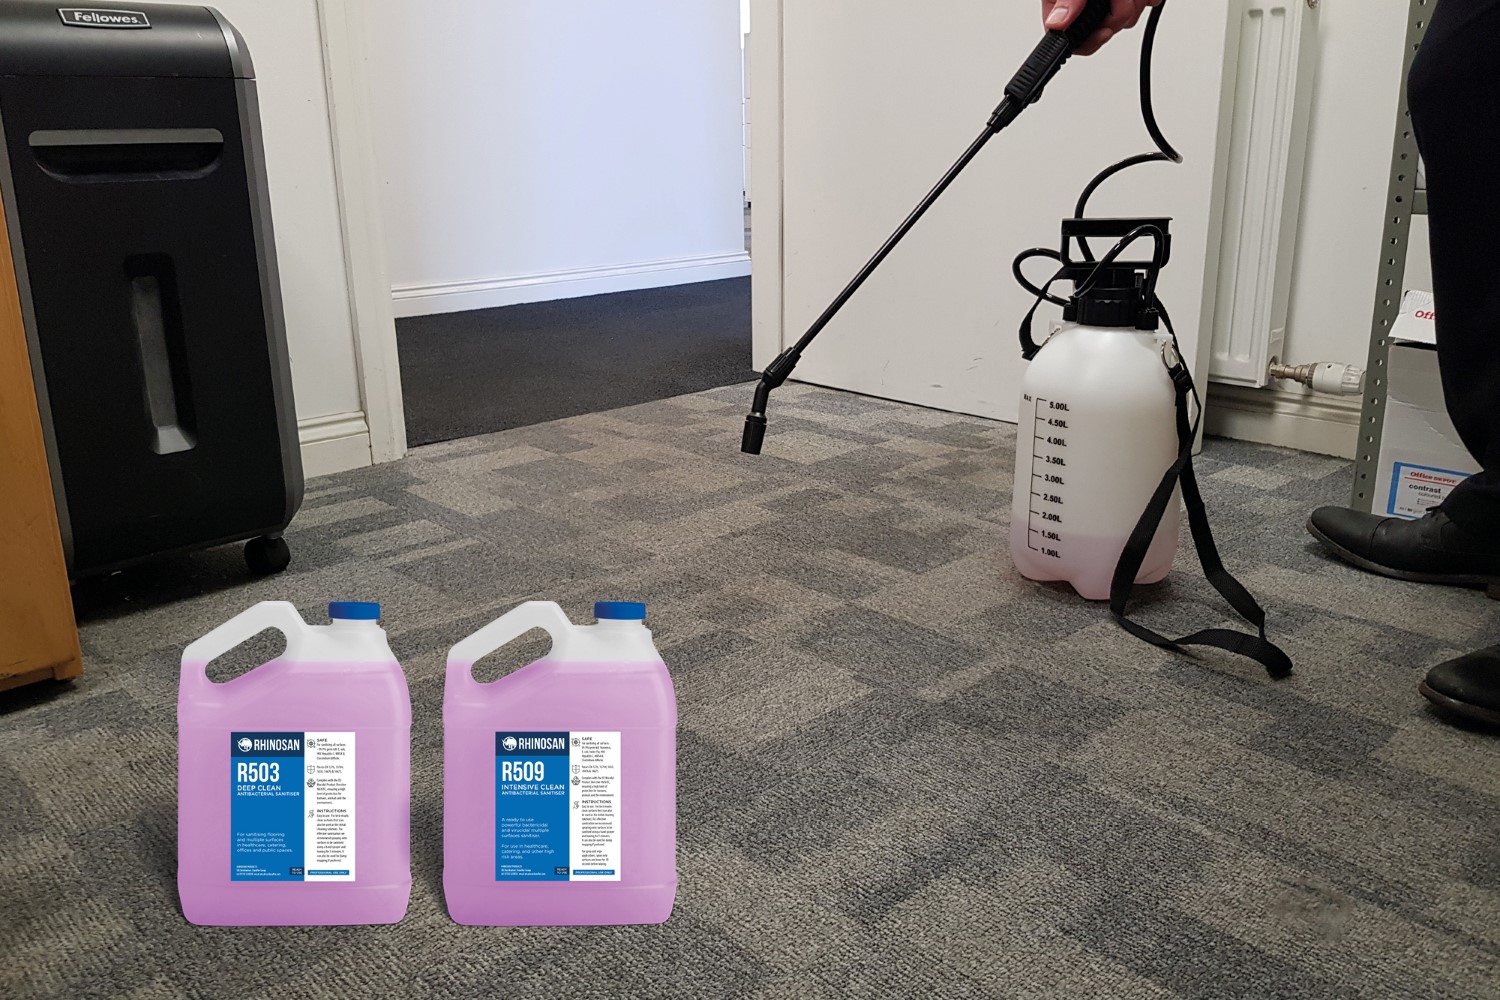 Deep Clean sanitiser on carpet tiles in office